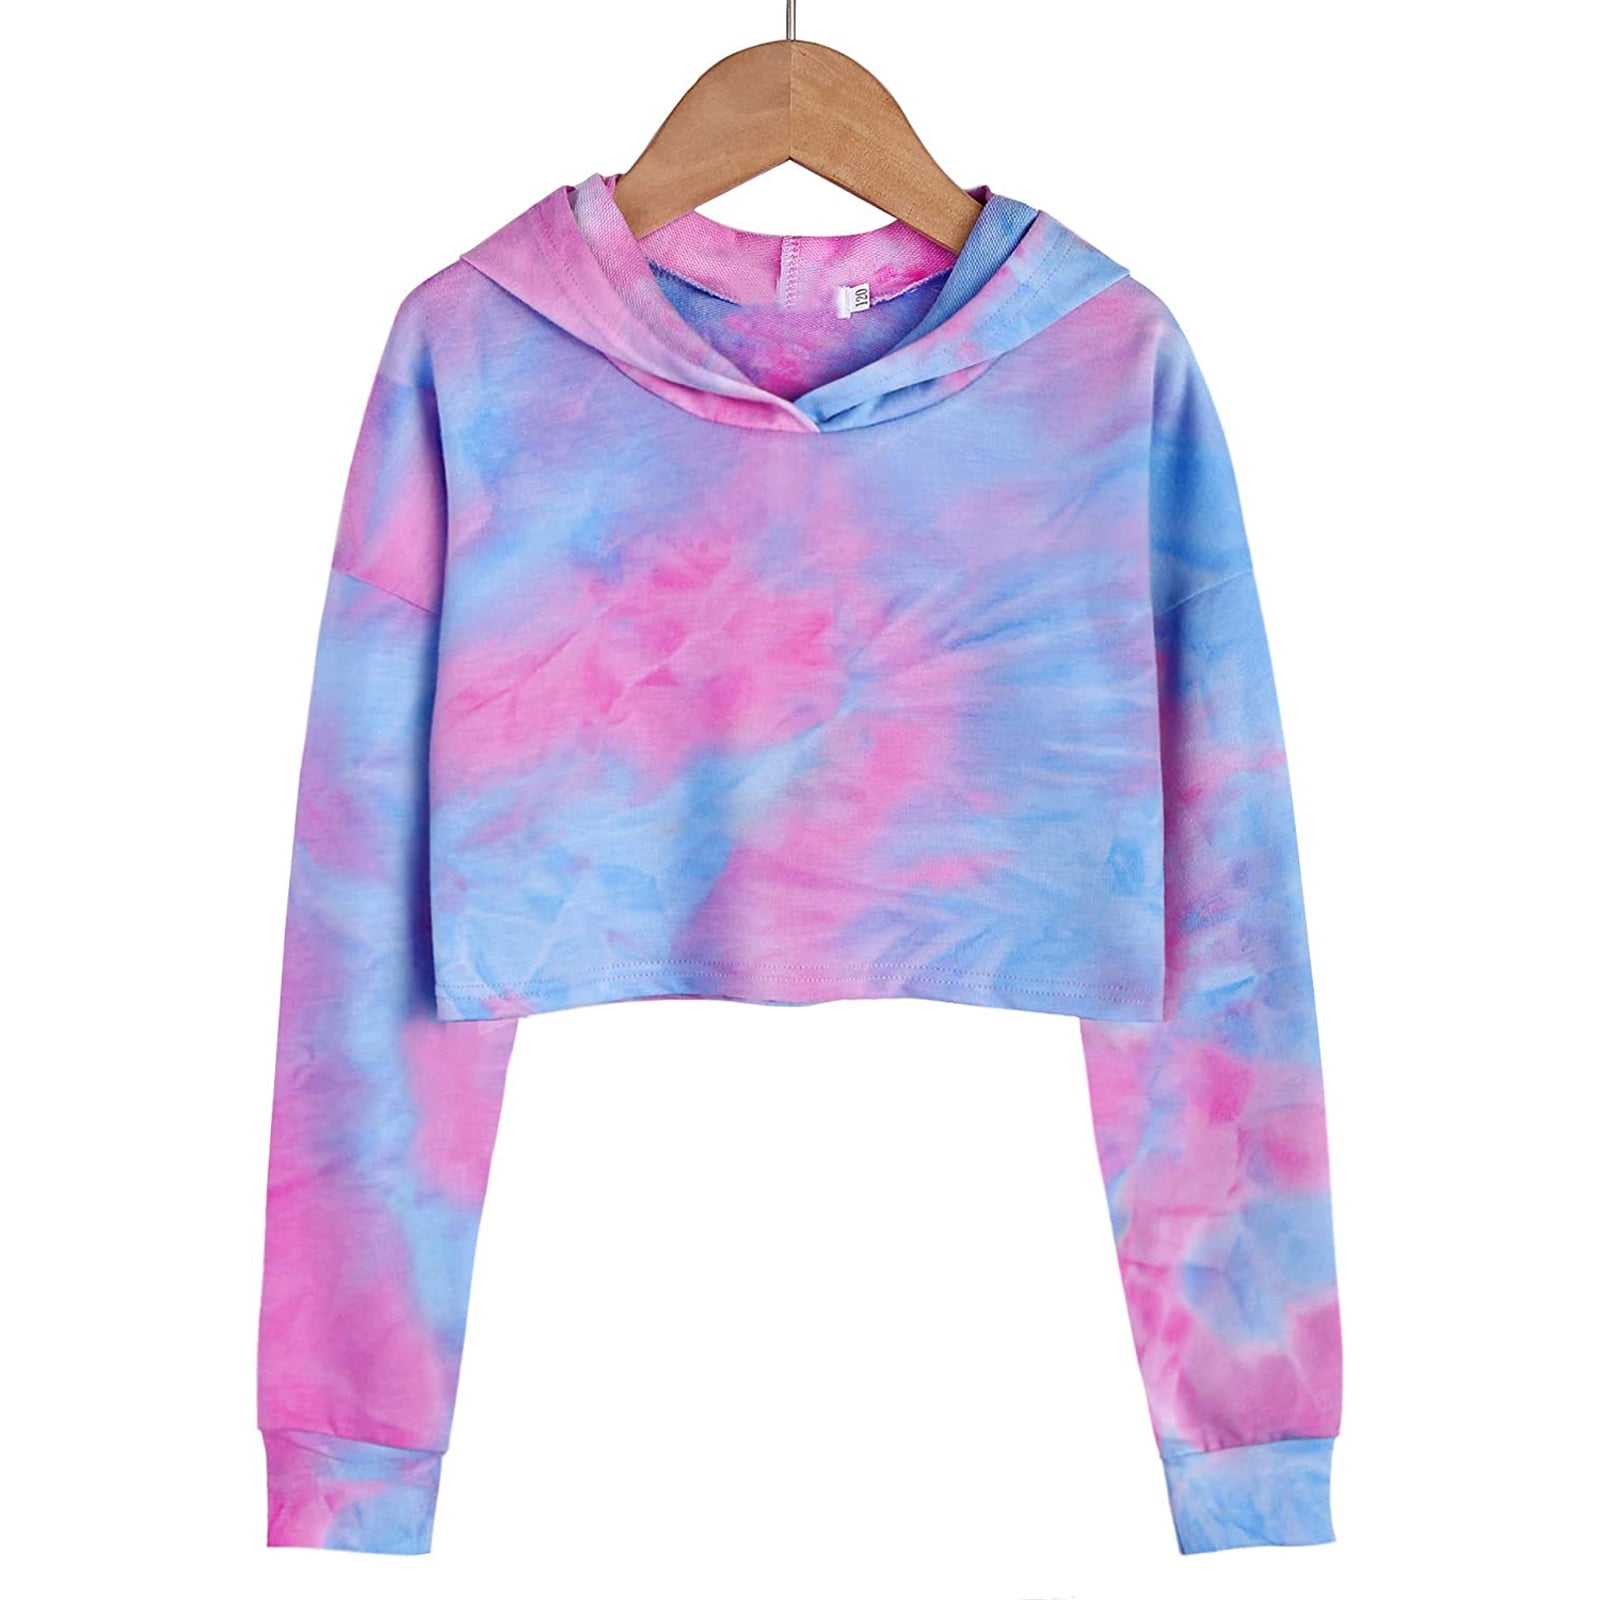 Kids Sweatshirts Teen Girls Crop Tops Tie-Dye Fashion Hoodies Blouses Pullover Tops